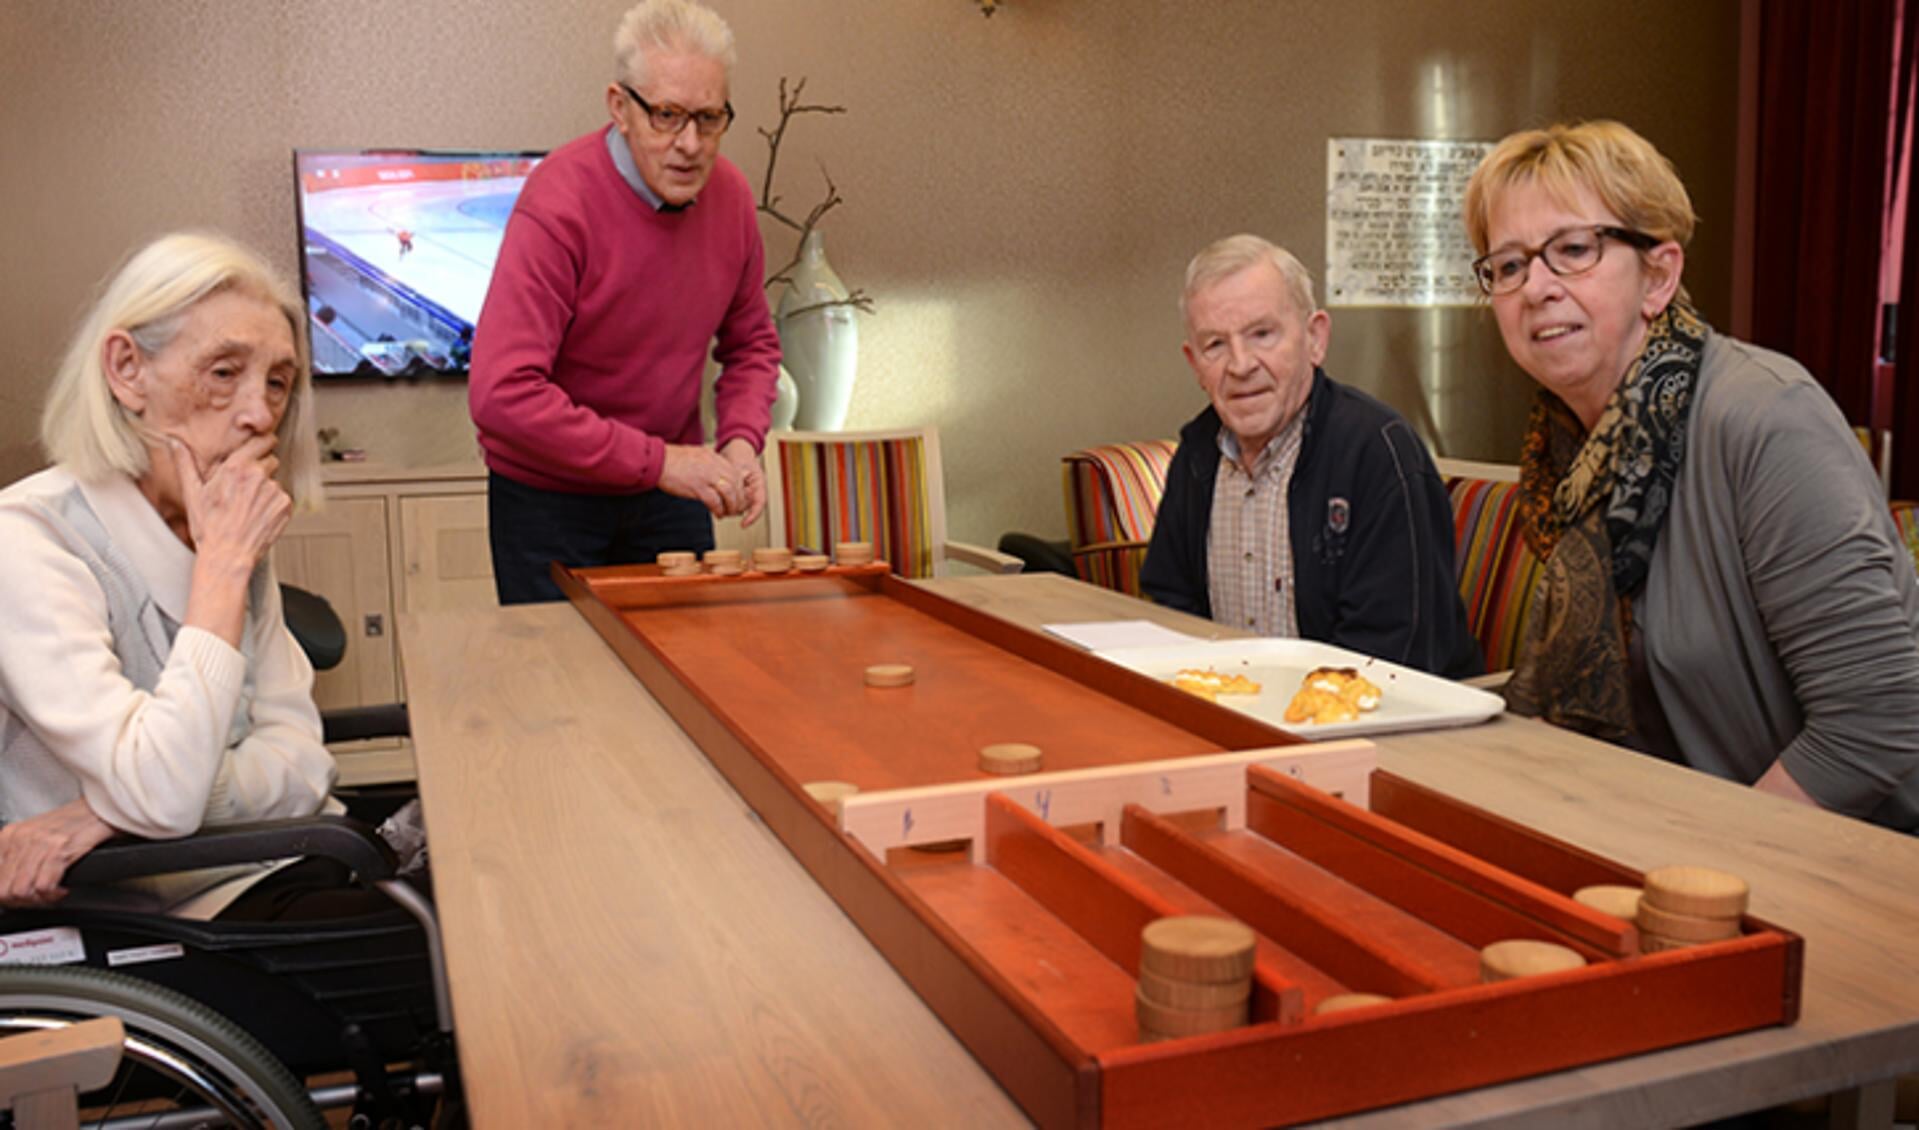 Nu nog worden door zelfstandig wonende ouderen in het Borsthuis gezelschapsspellen als sjoelen gespeeld. (Foto: Trivium Meulenbelt Zorg)